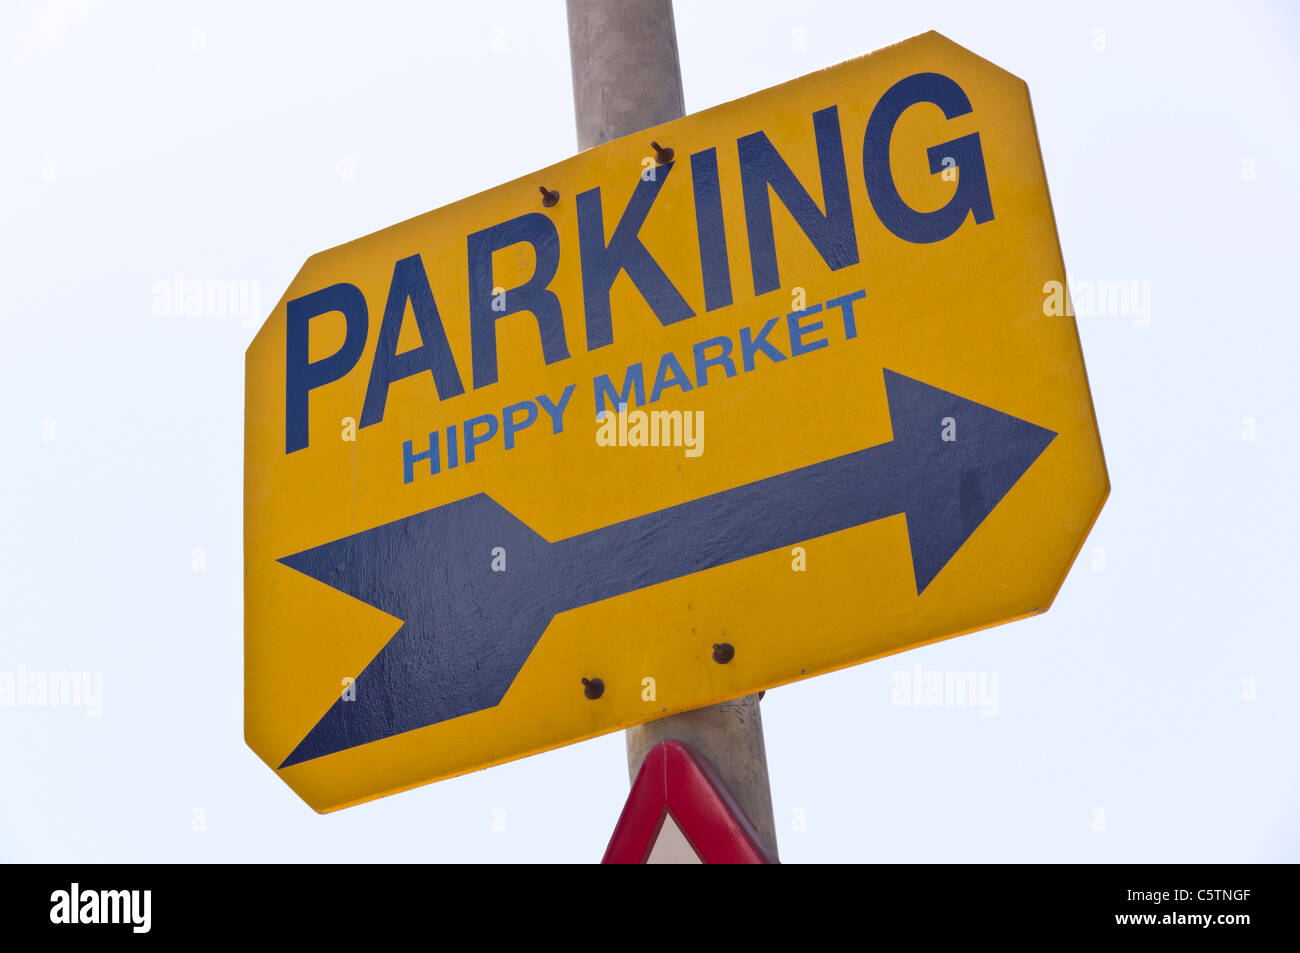 Ibiza, Baléares, Espagne - marché hippy parking sign Banque D'Images